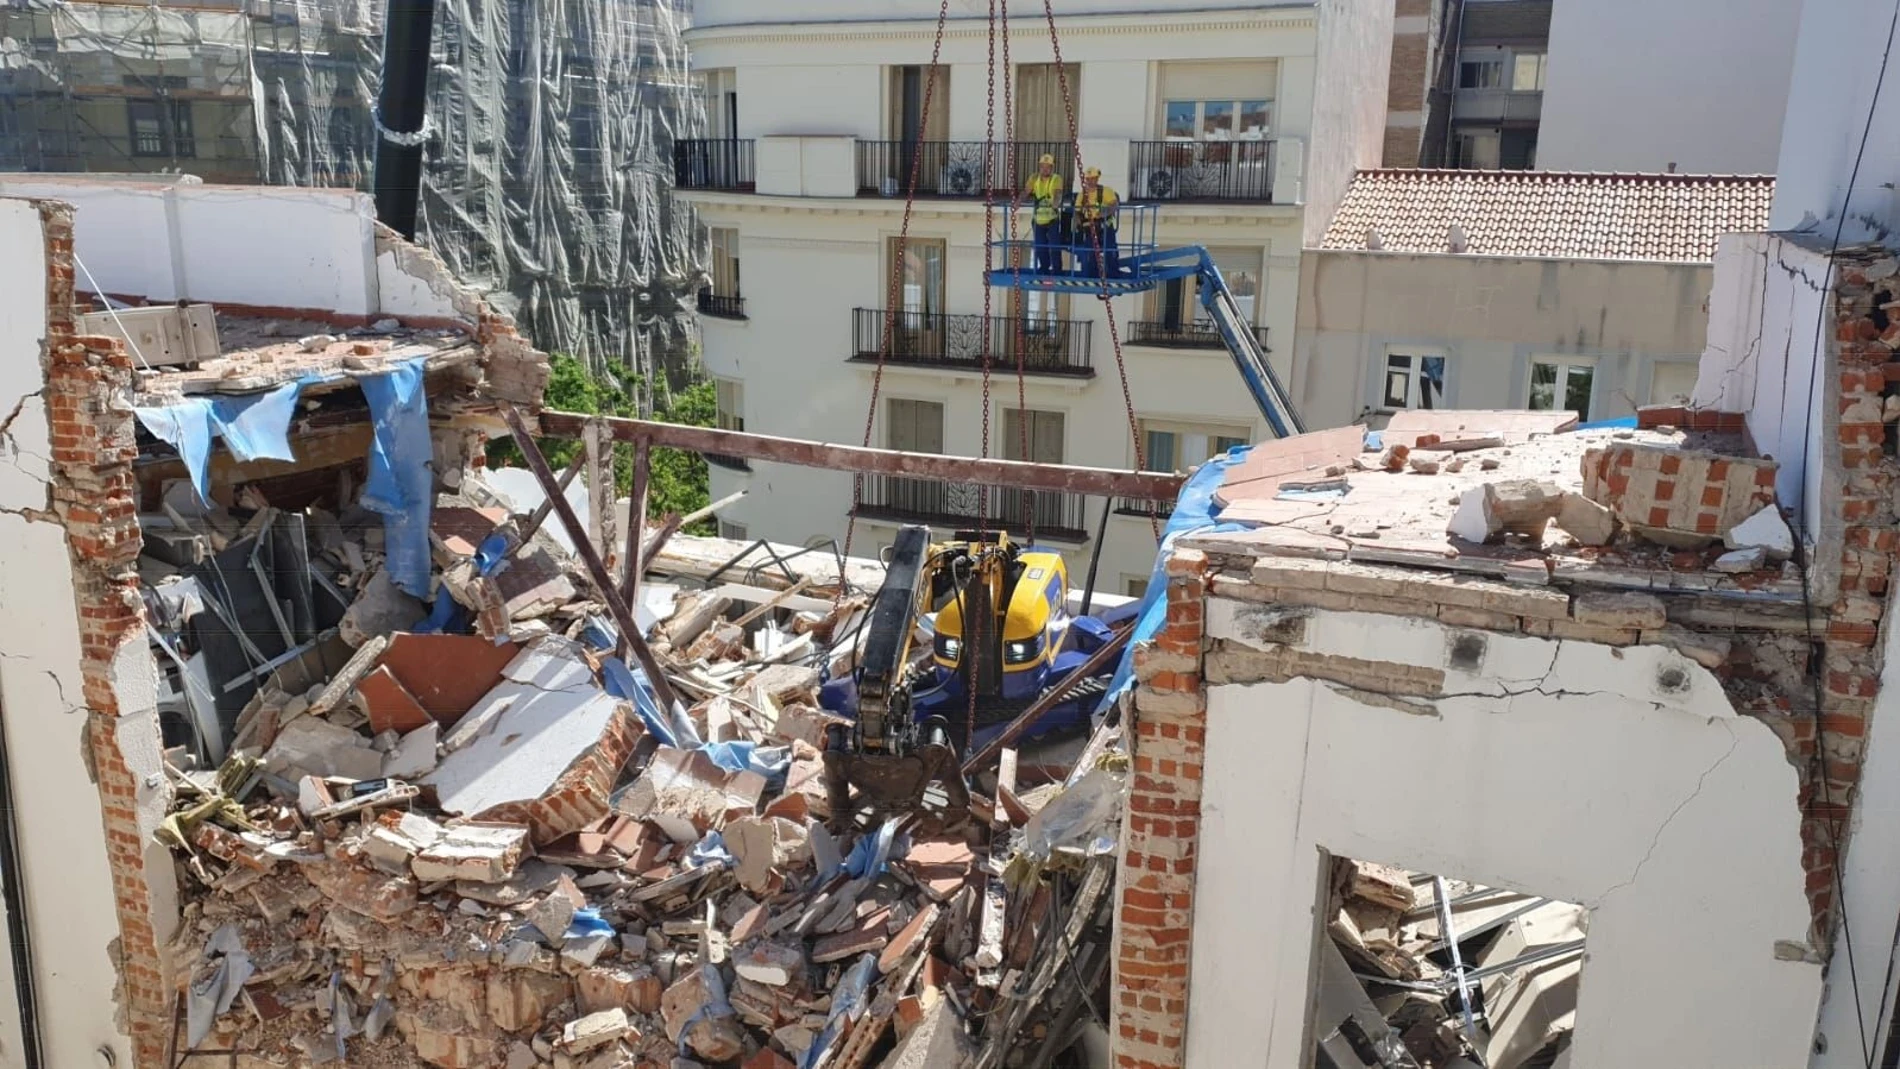 Estado de las primeras plantas del edificio que explotó el 6 de mayo en la calle General Pardiñas de Madrid AYUN 17/05/2022